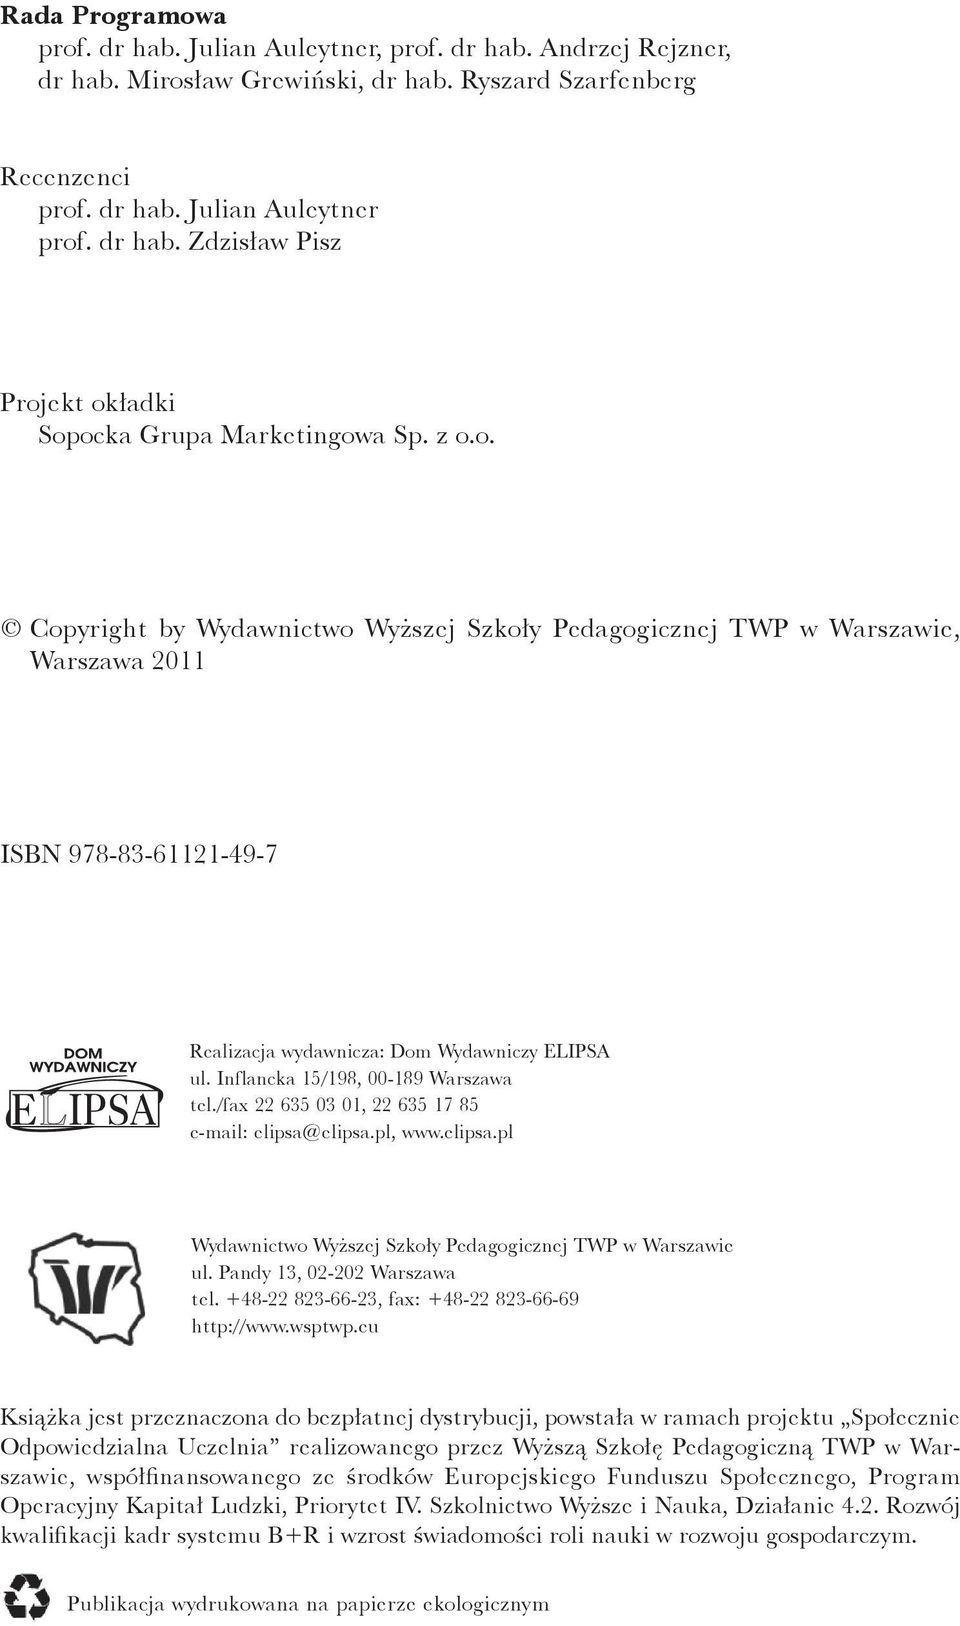 Inflancka 15/198, 00-189 Warszawa tel./fax 22 635 03 01, 22 635 17 85 e-mail: elipsa@elipsa.pl, www.elipsa.pl Wydawnictwo Wyższej Szkoły Pedagogicznej TWP w Warszawie ul.